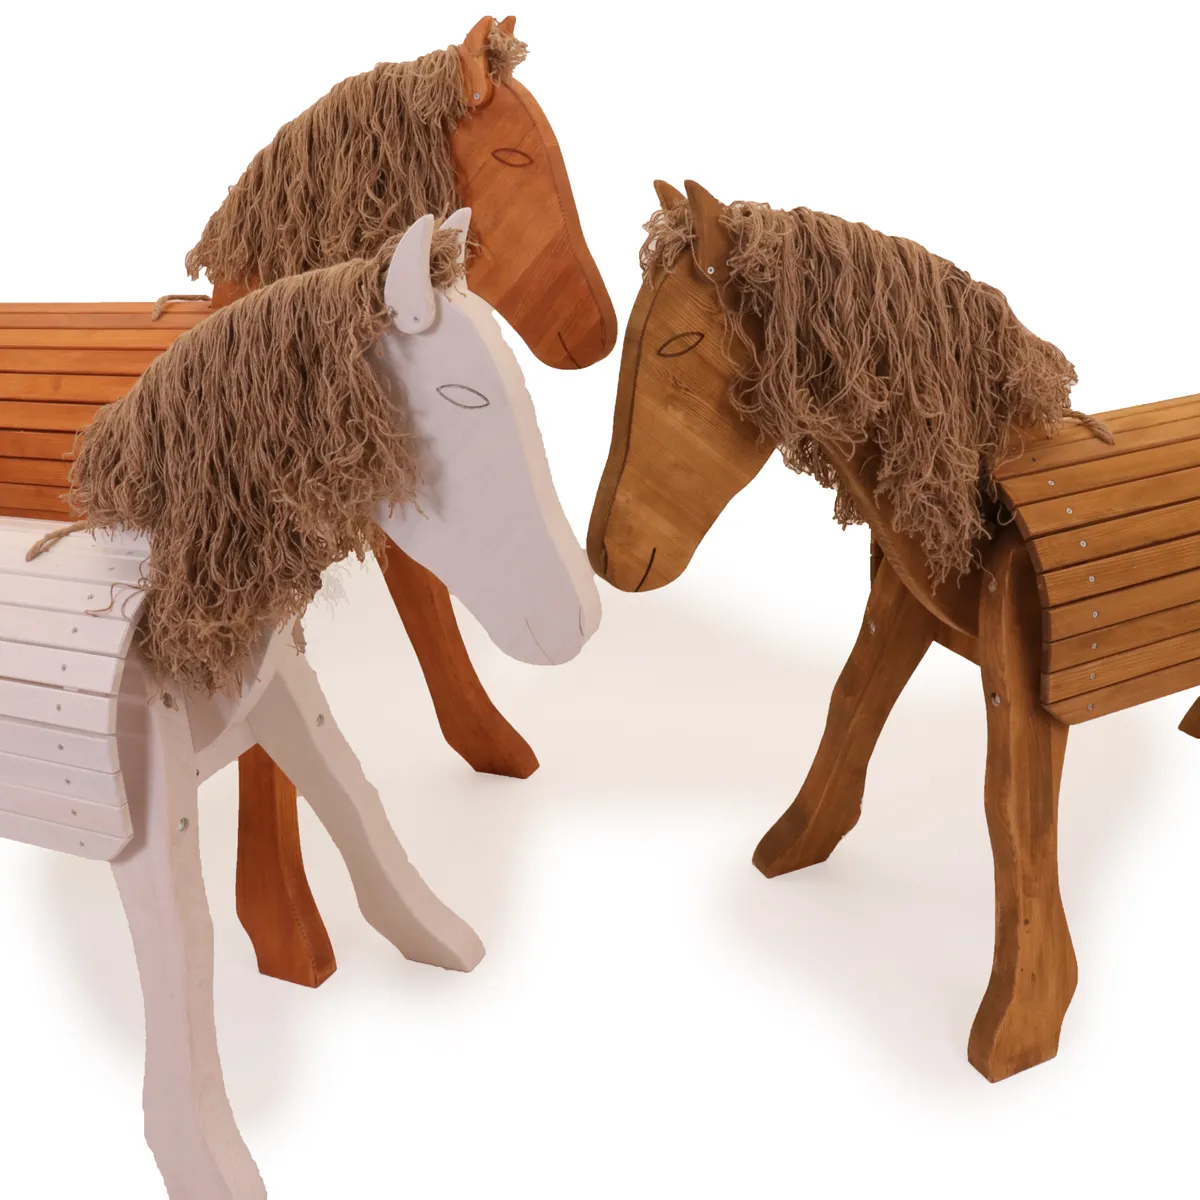 Holz-Voltigierpferde in drei verschiedenen Farbvarianten: Eiche, Kastanie und weiß.